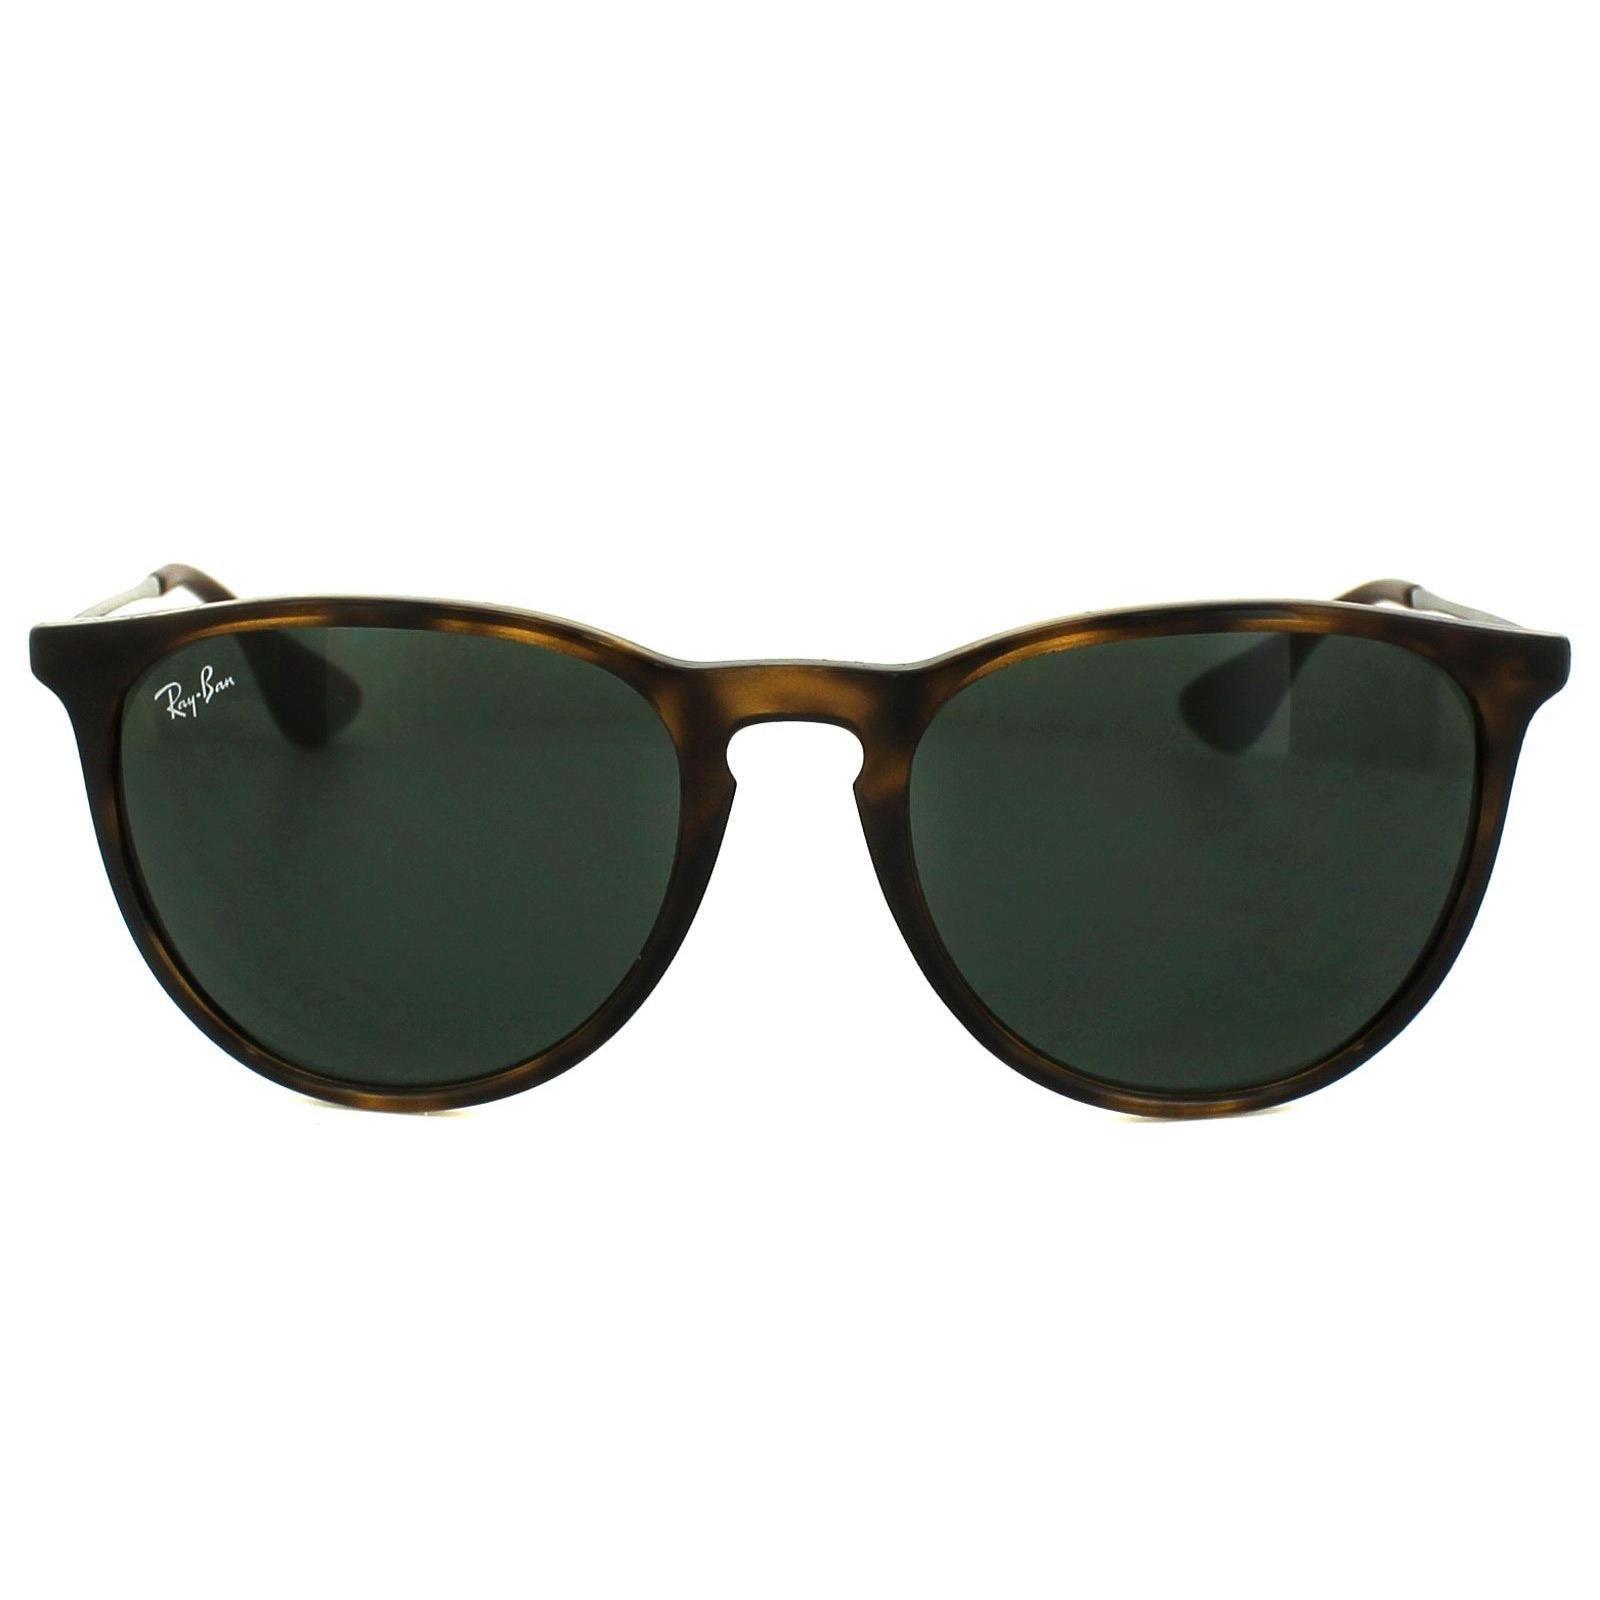 солнцезащитные очки ray ban rb 4171 710 71 овальные оправа пластик с защитой от уф коричневый Круглые черепаховые и темно-зеленые солнцезащитные очки Erika 4171 Ray-Ban, коричневый